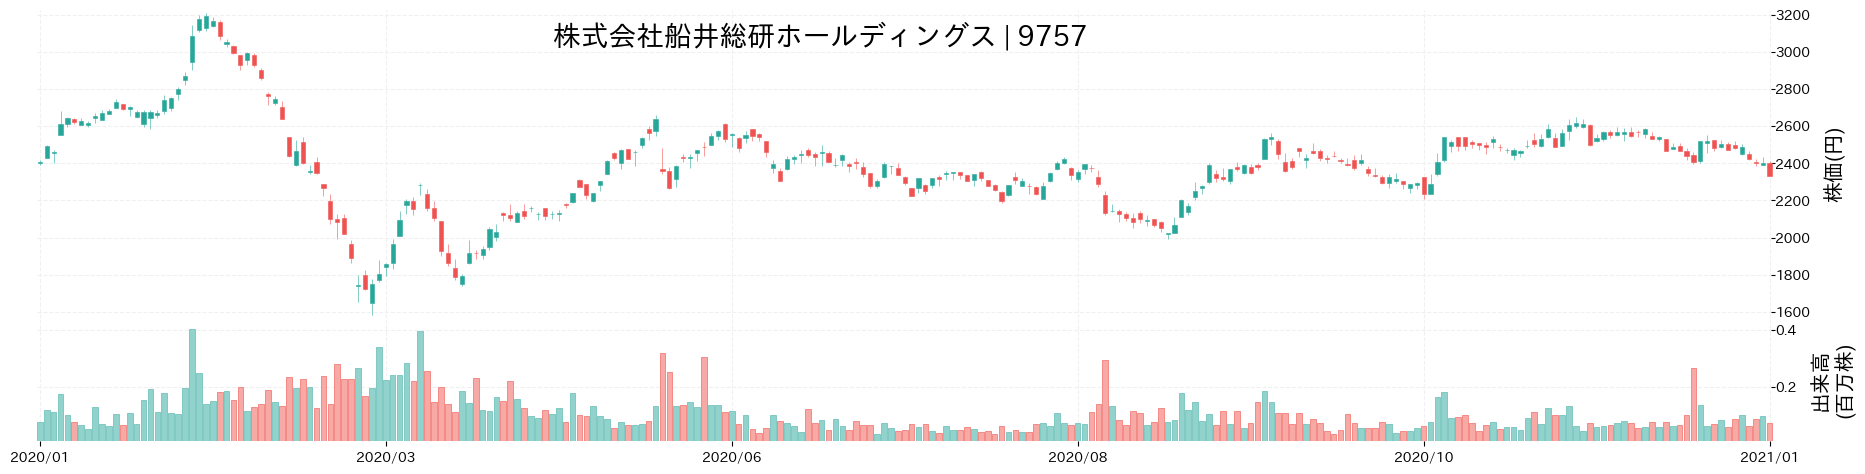 船井総研ホールディングスの株価推移(2020)